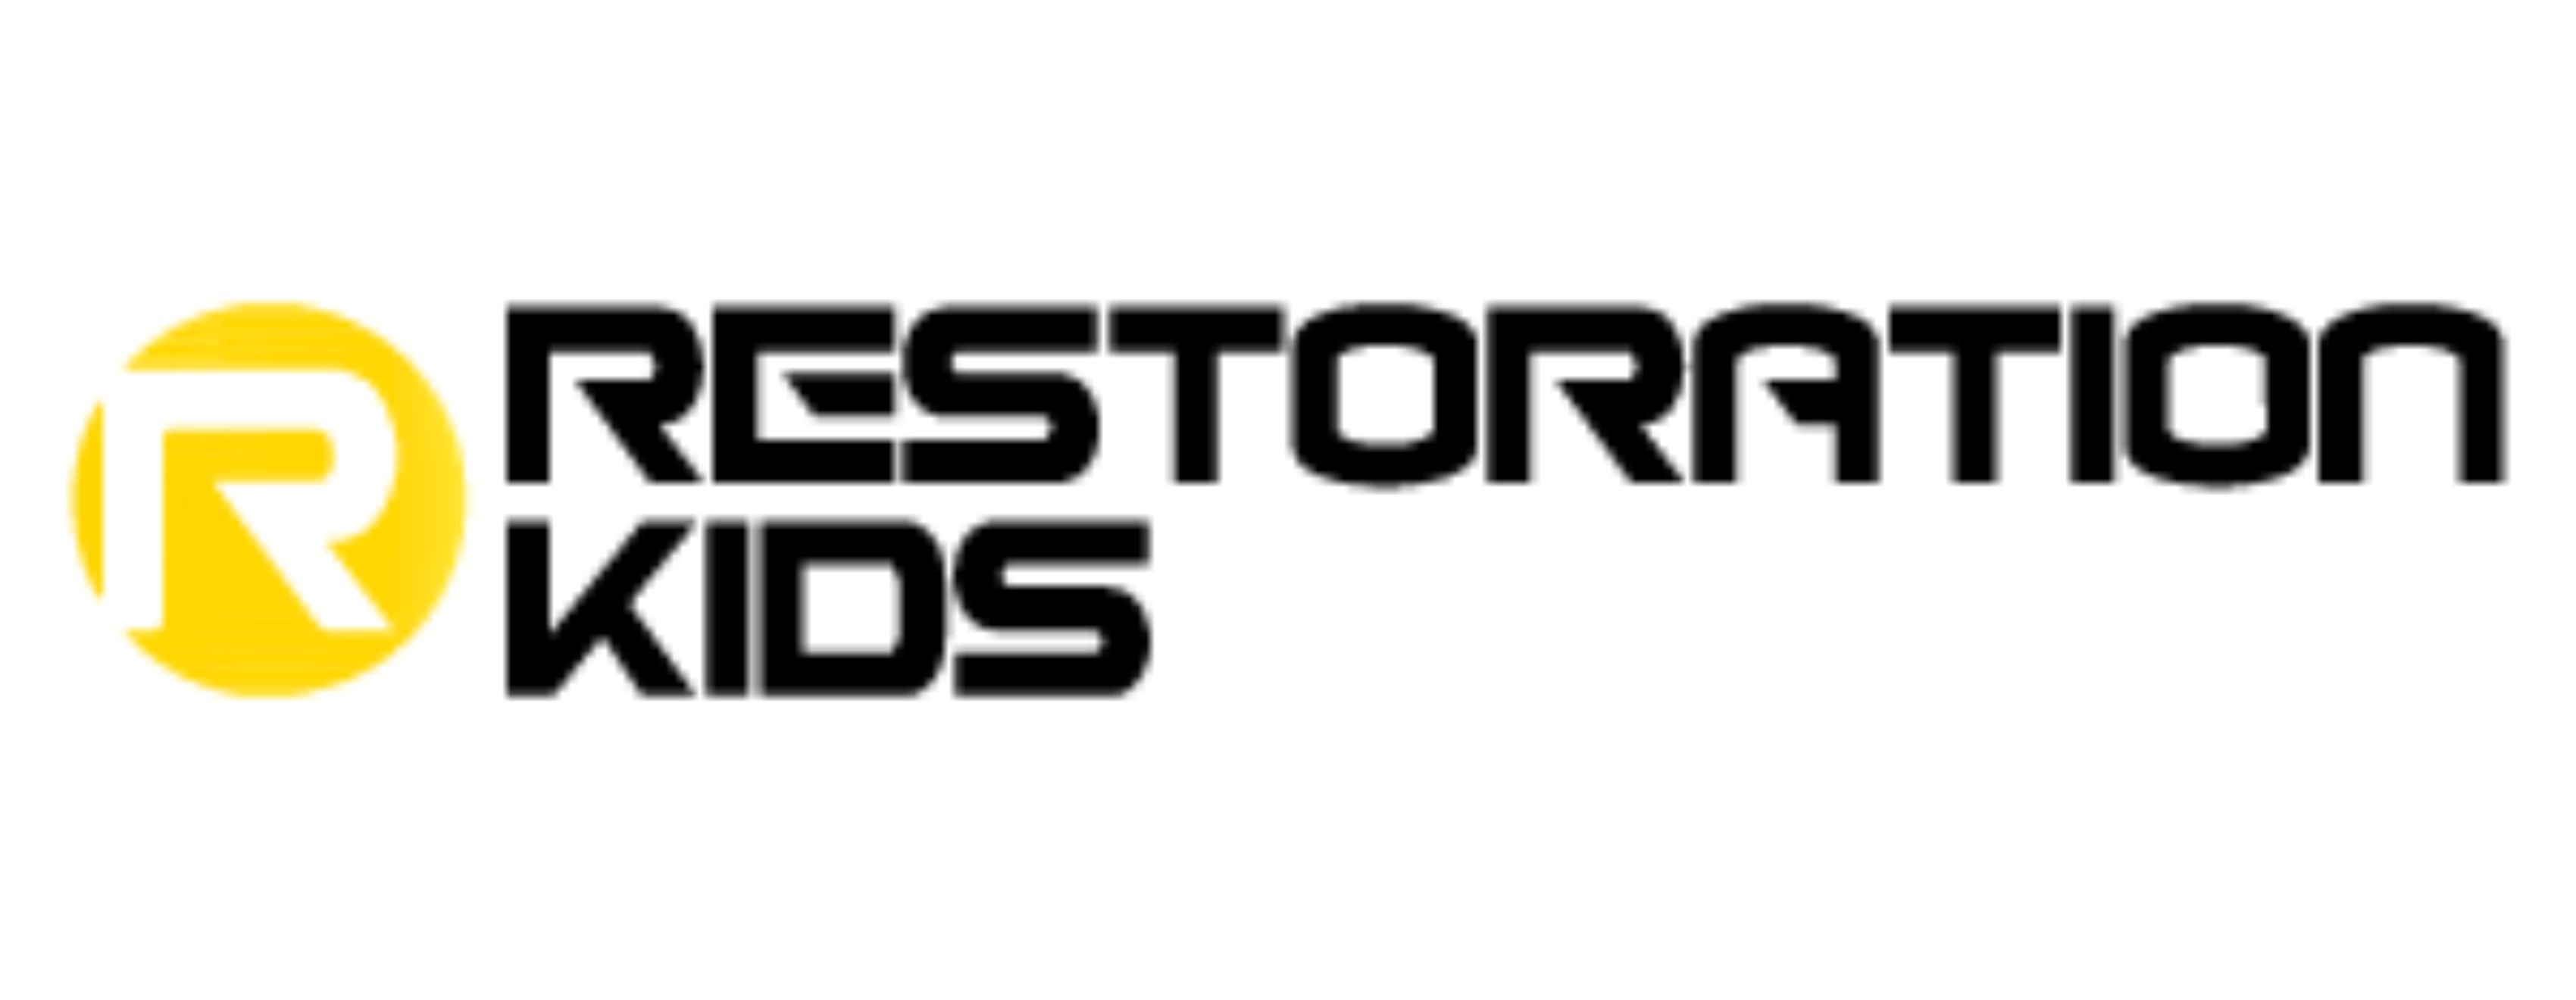 Kids Restoration Logo - stretched